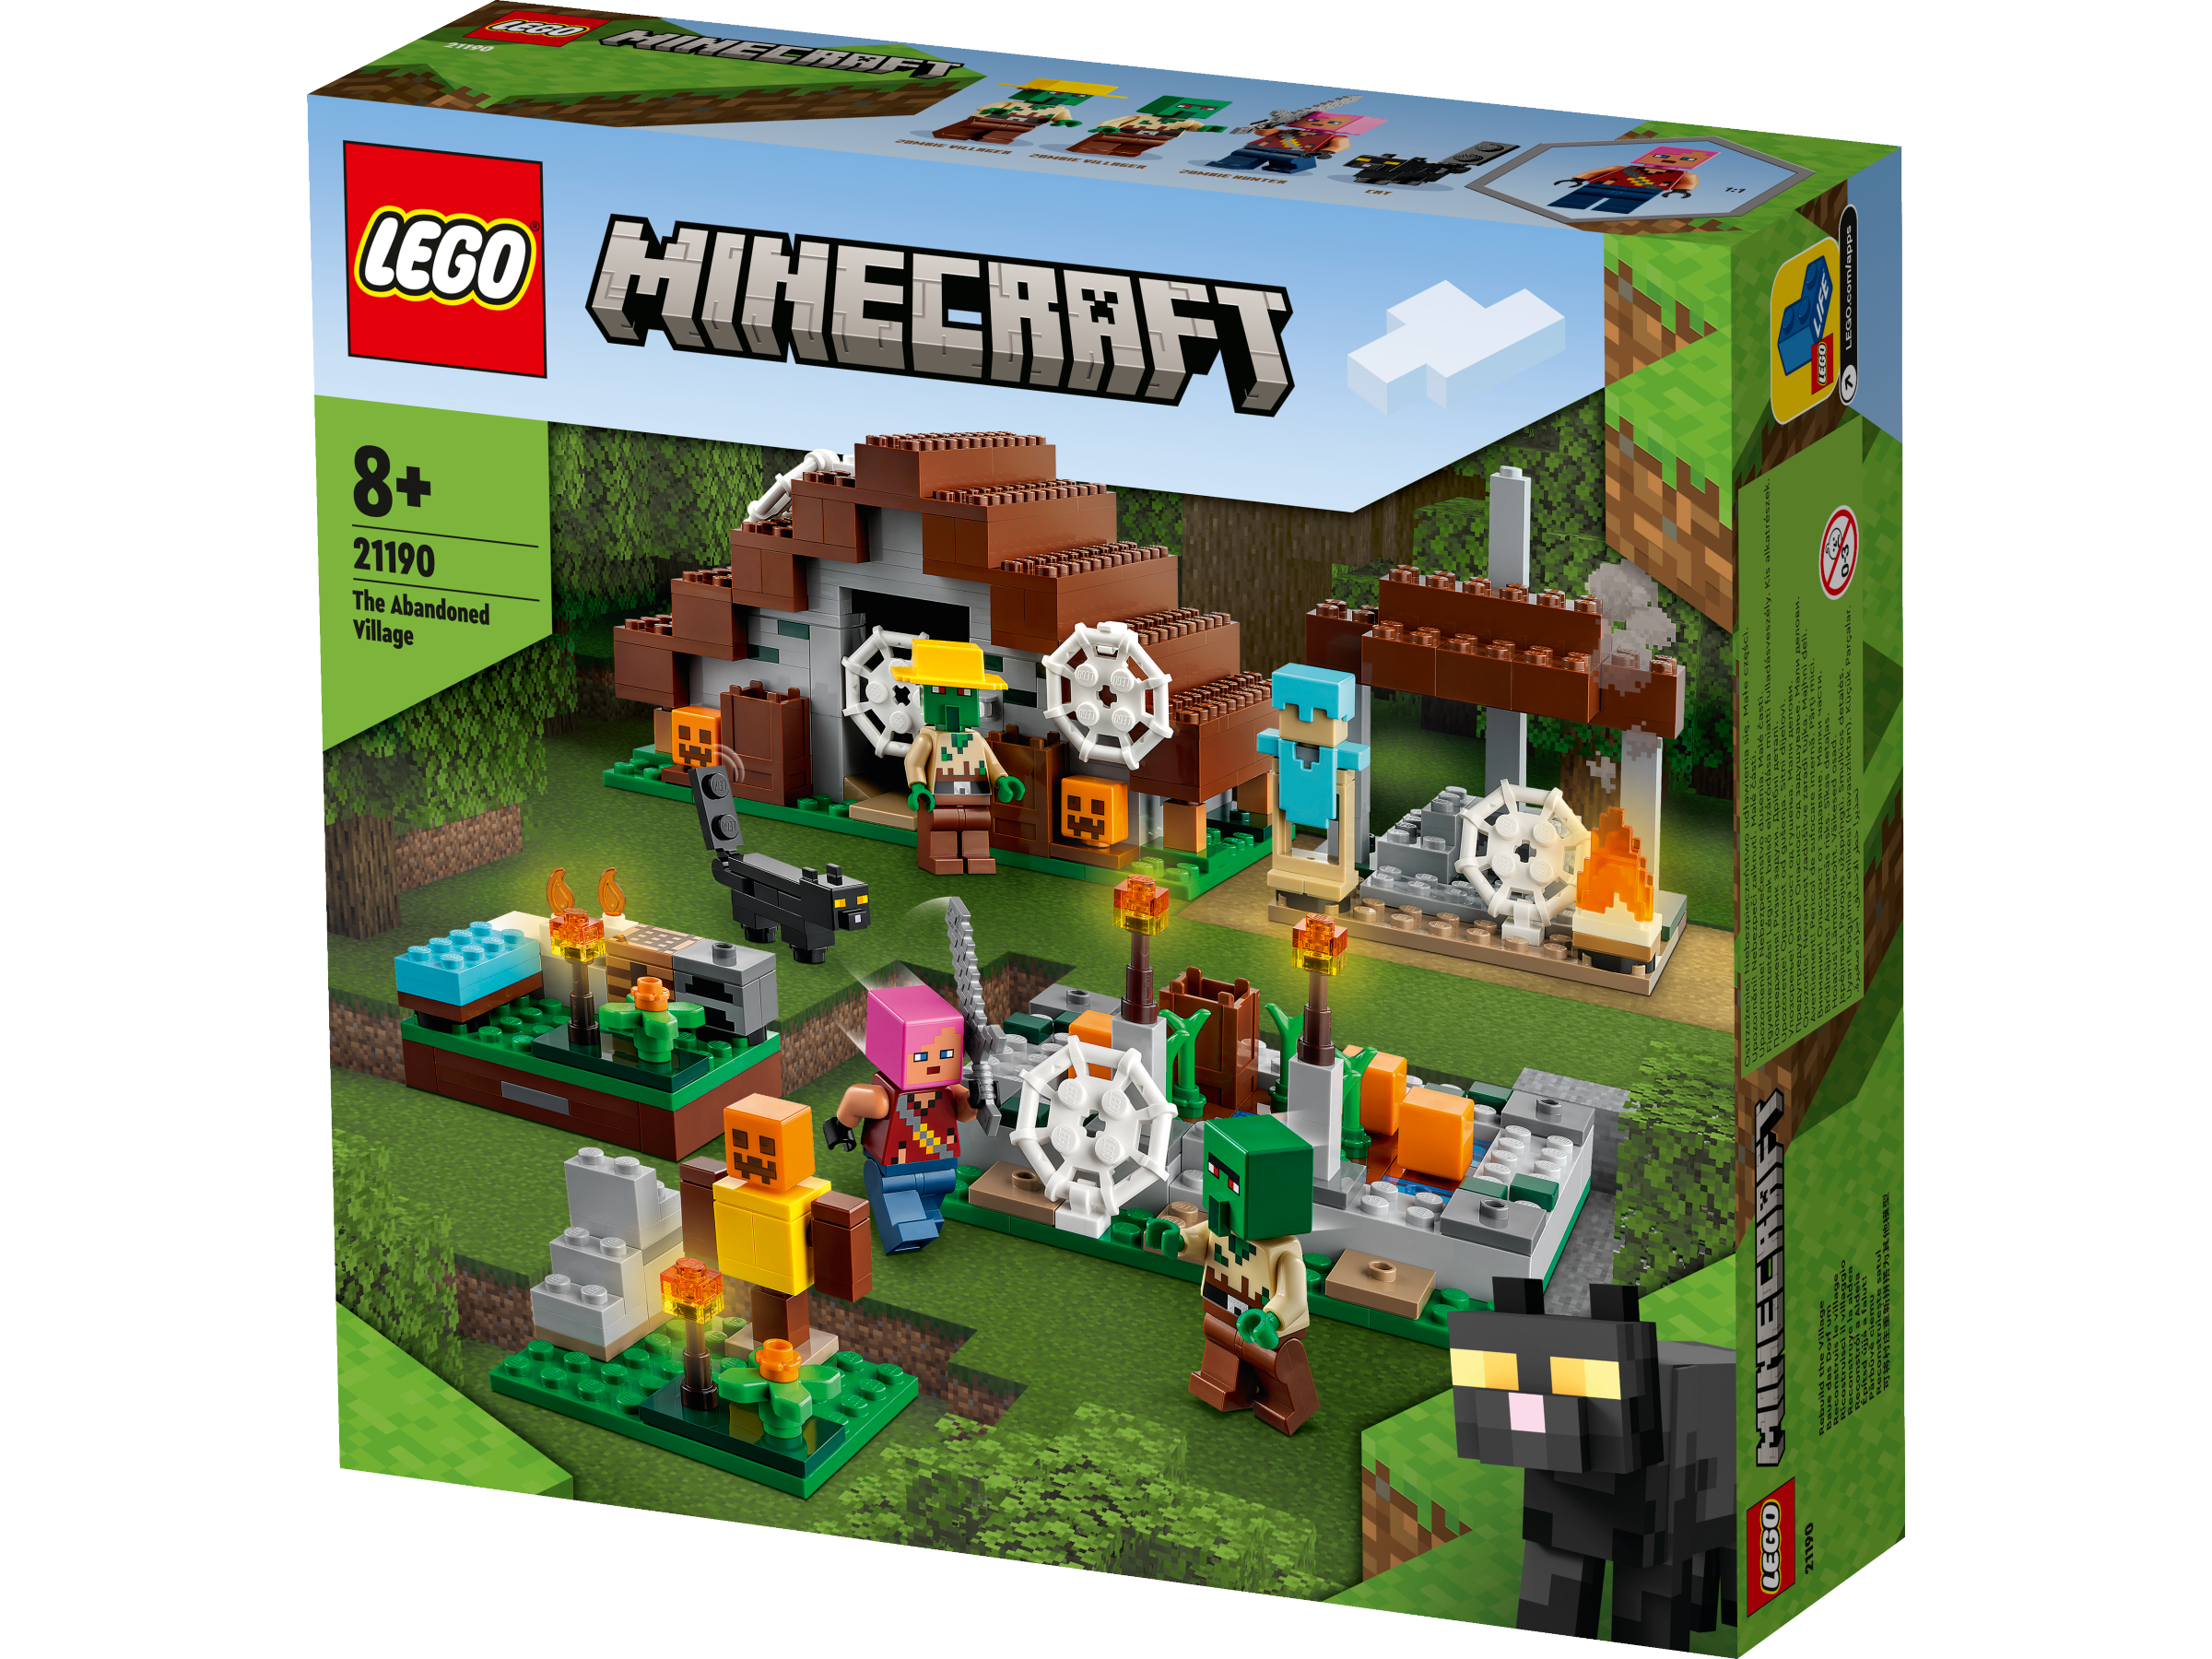 Lego 21190 The Abandoned Village